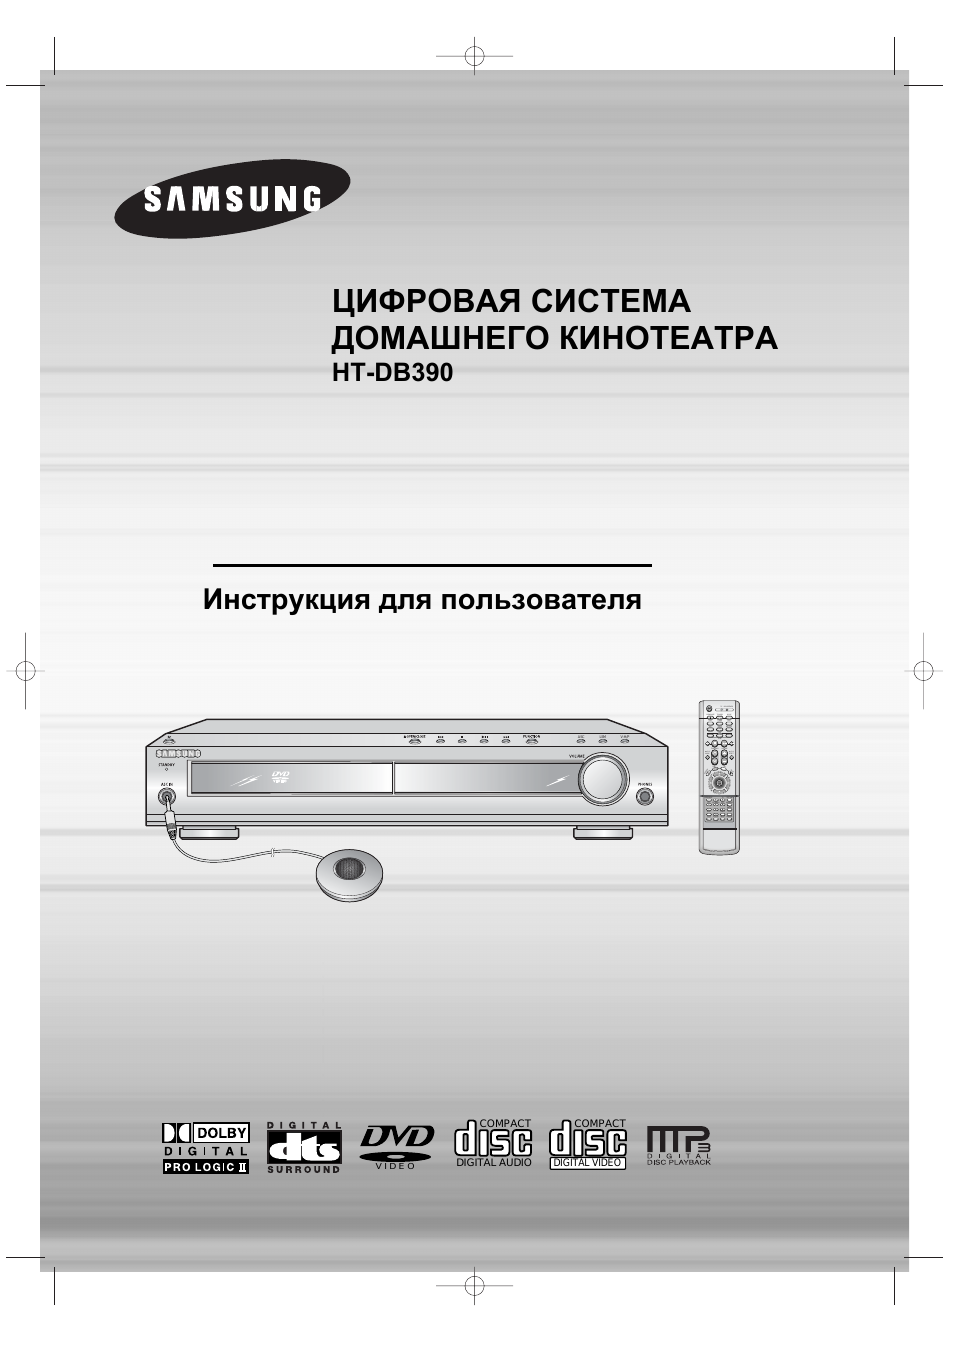 Инструкция по эксплуатации Samsung HT-DB390 | 71 cтраница